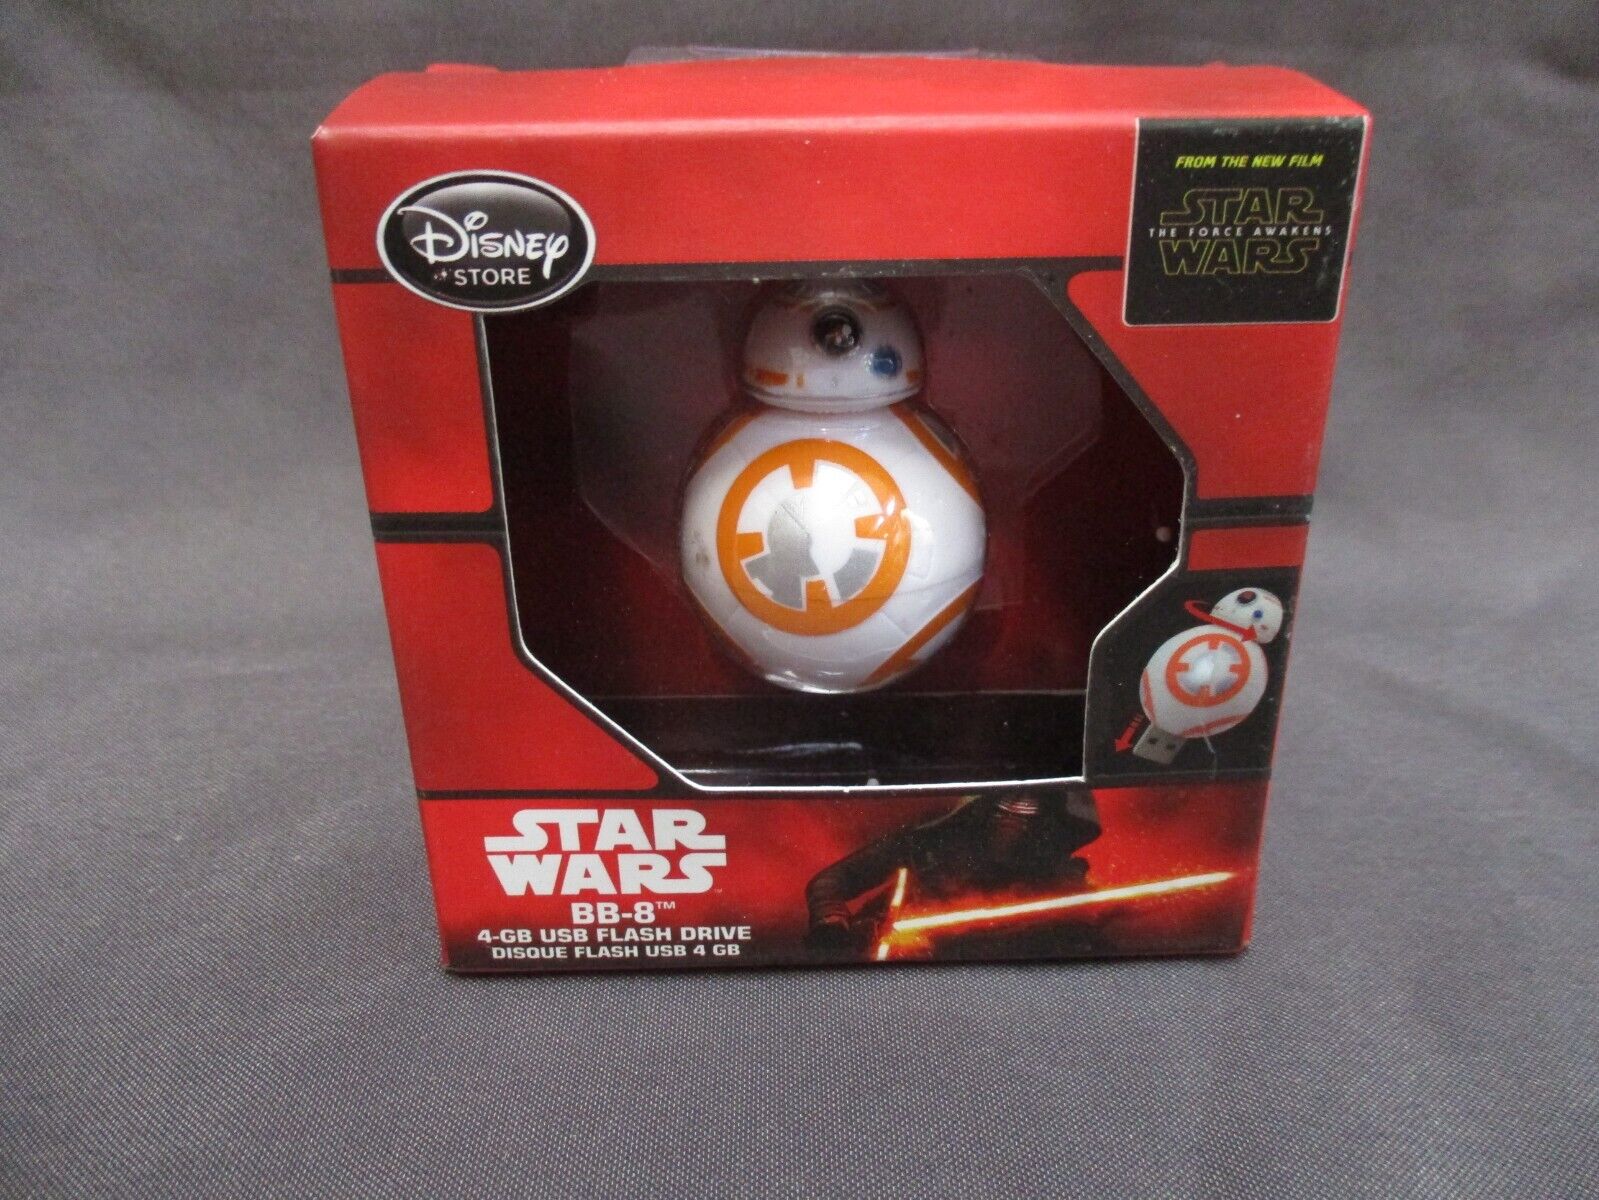 New Old Stock / Unused  - Star Wars BB-8 4-GB USB Flash Drive - Disney Store